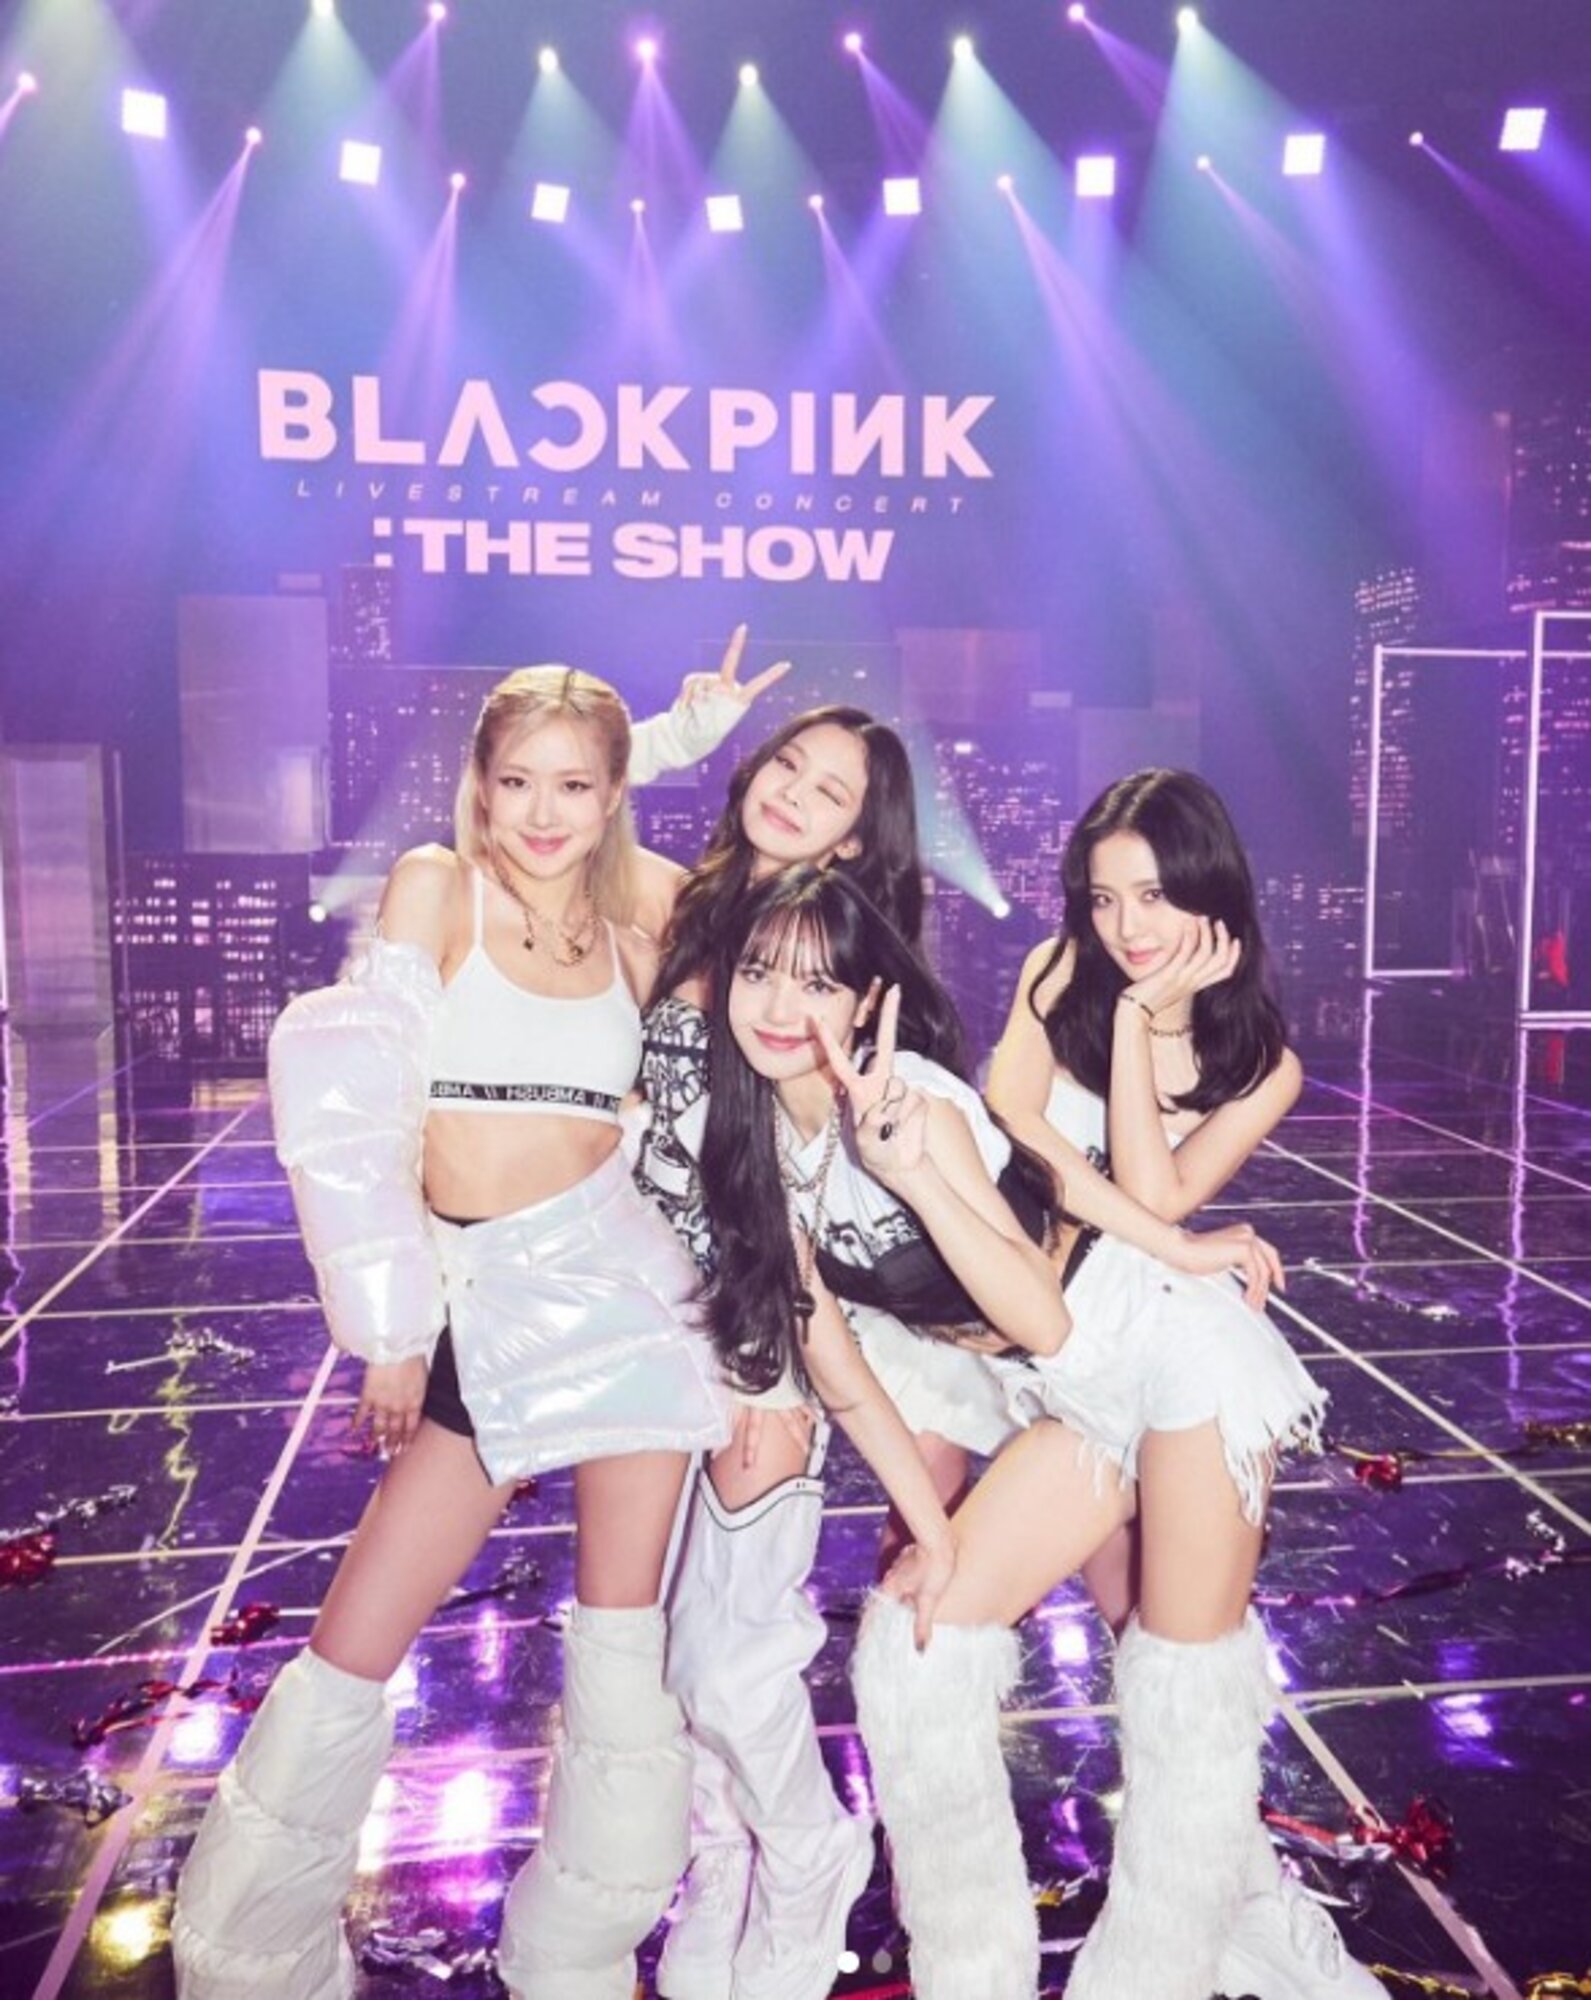 A Blackpink K-pop lánybanda tagjai: Jennie Kim, Jisoo, Rosé, Lisa.